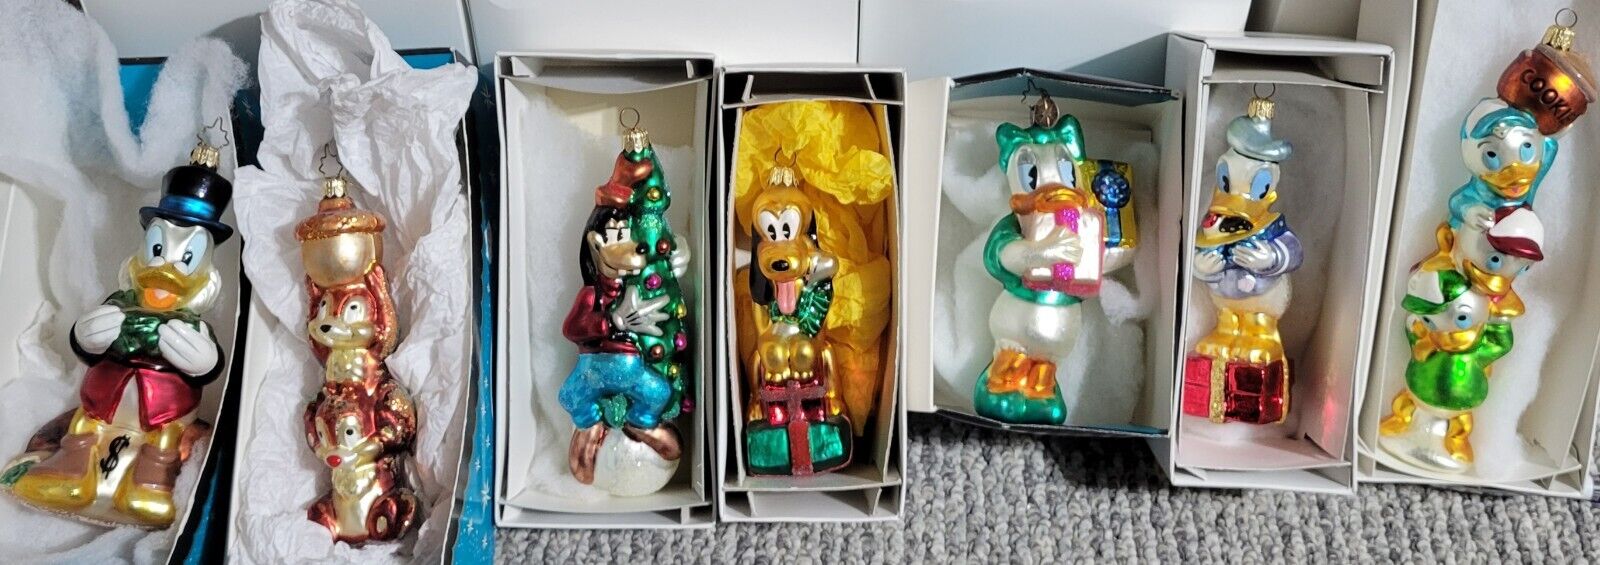 Christopher Radko Disney Ornaments Variety bundle